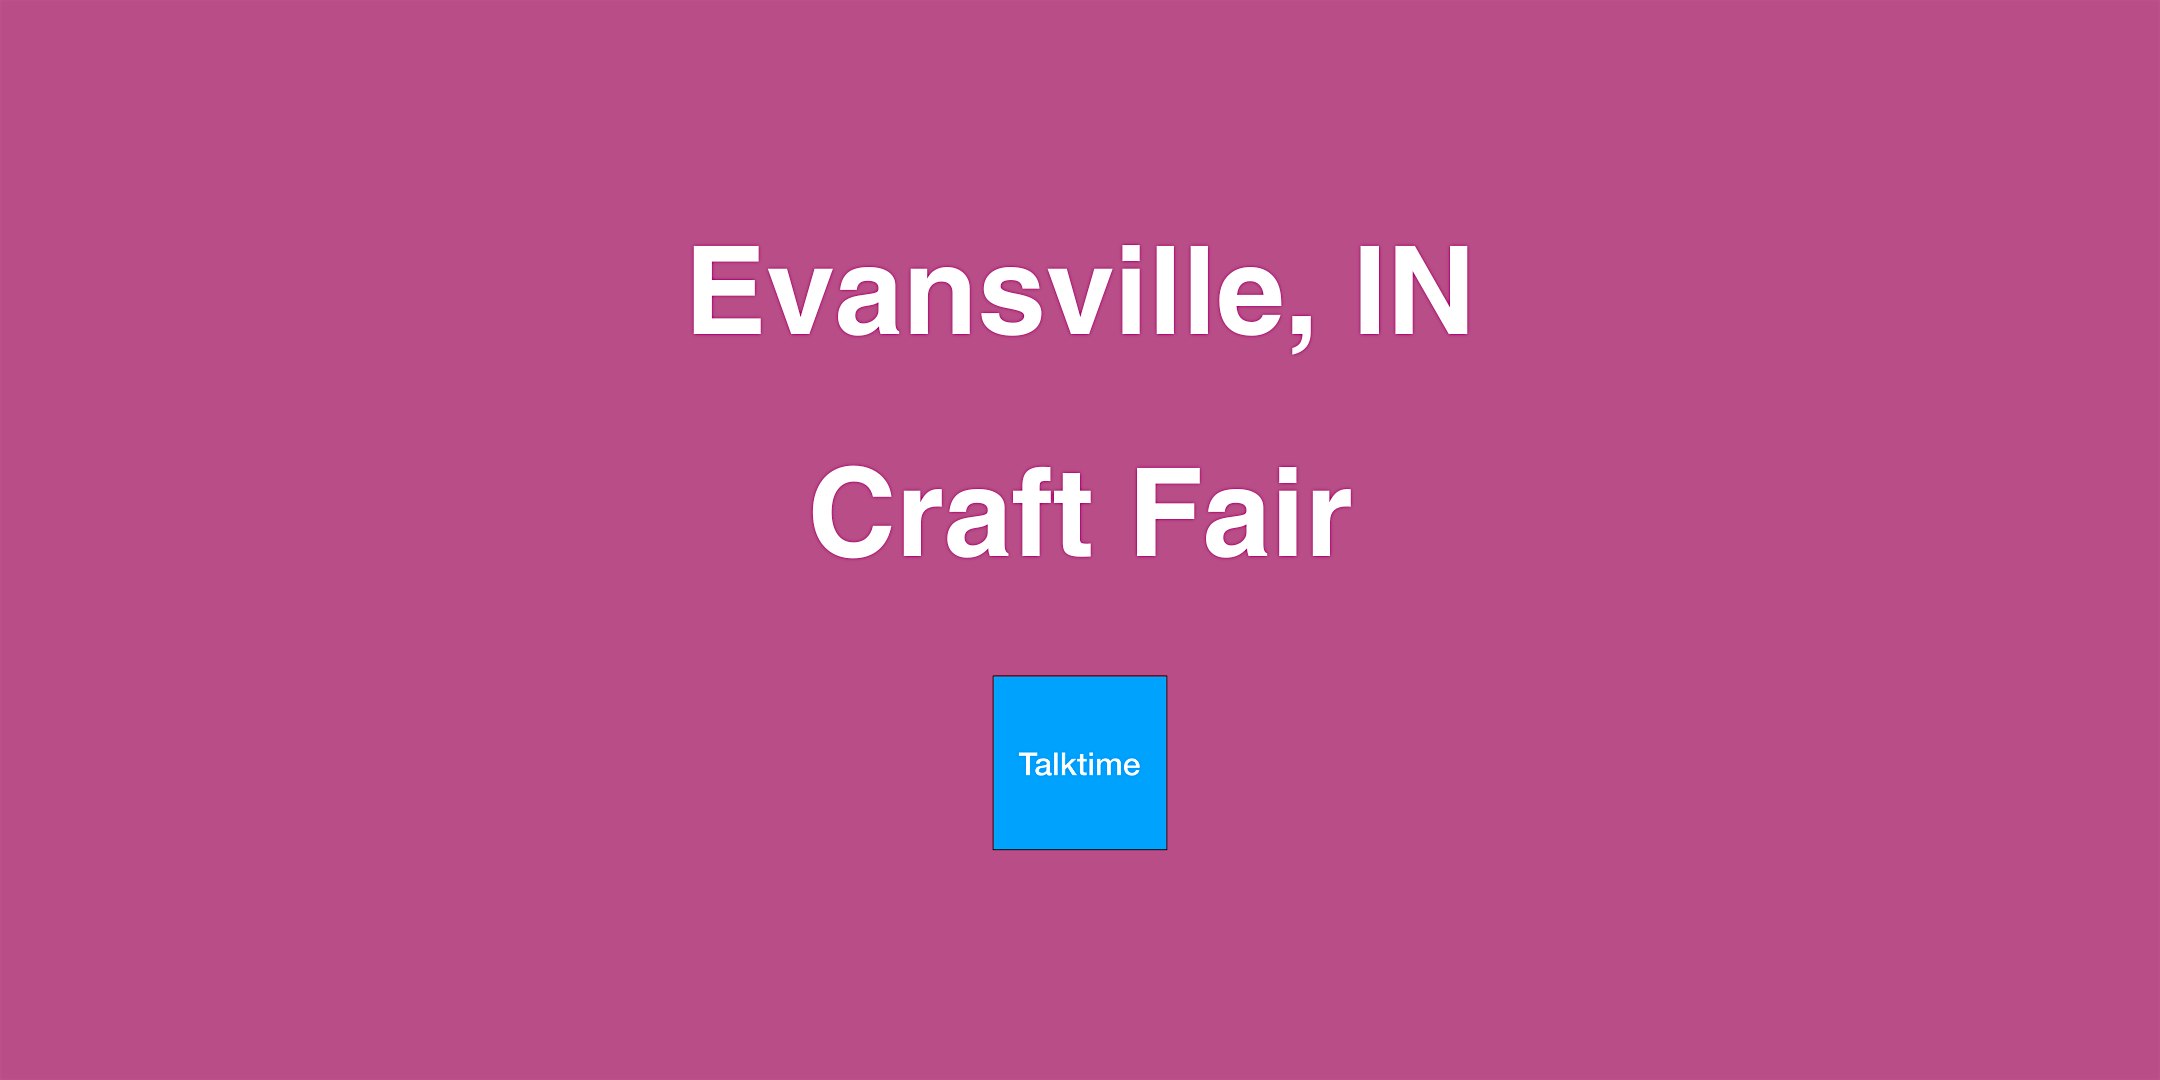 Craft Fair - Evansville